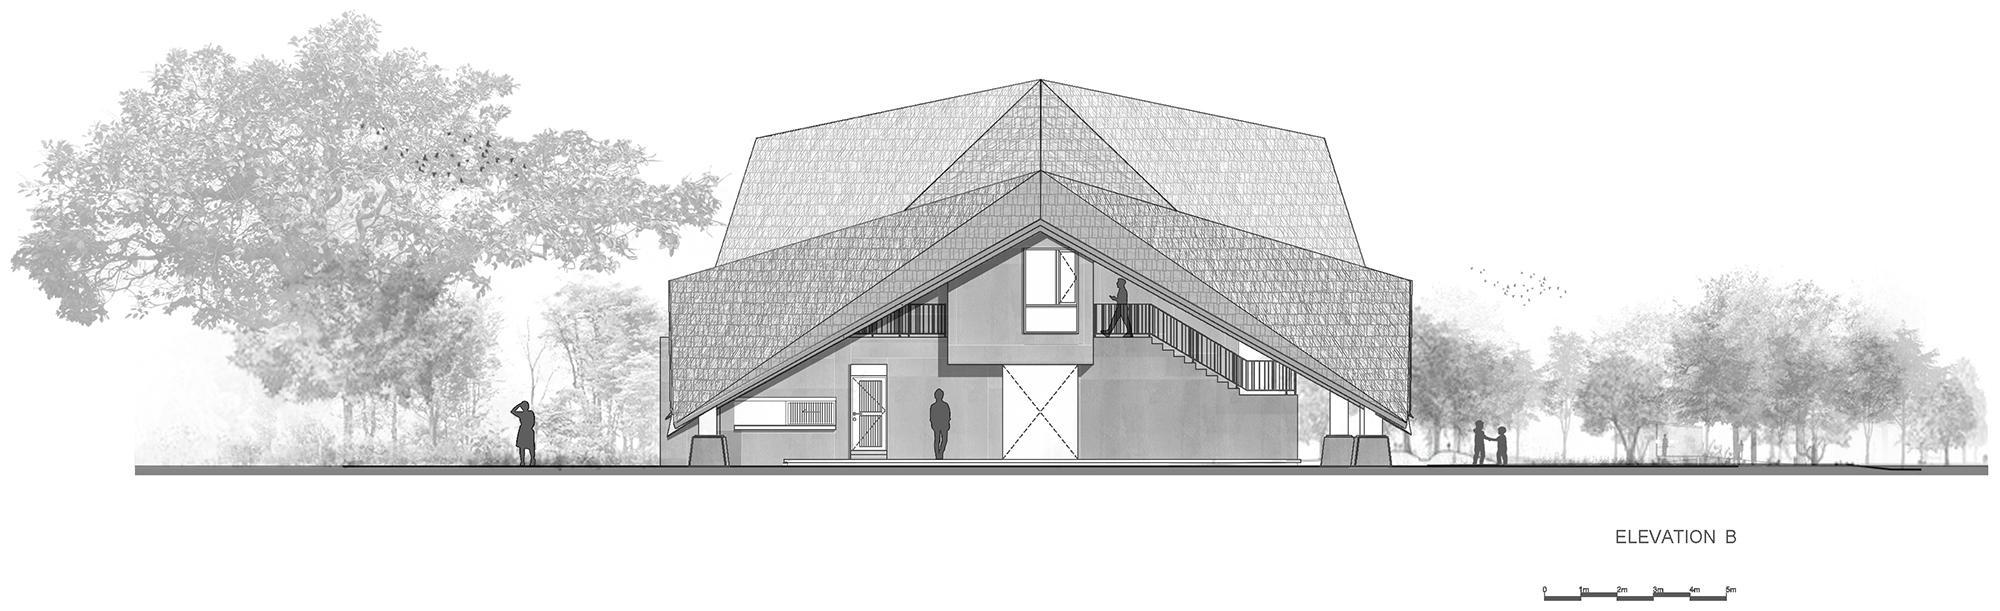 泰国乡村活动中心建筑：曲折的大屋顶下容纳了错落有致的功能体块